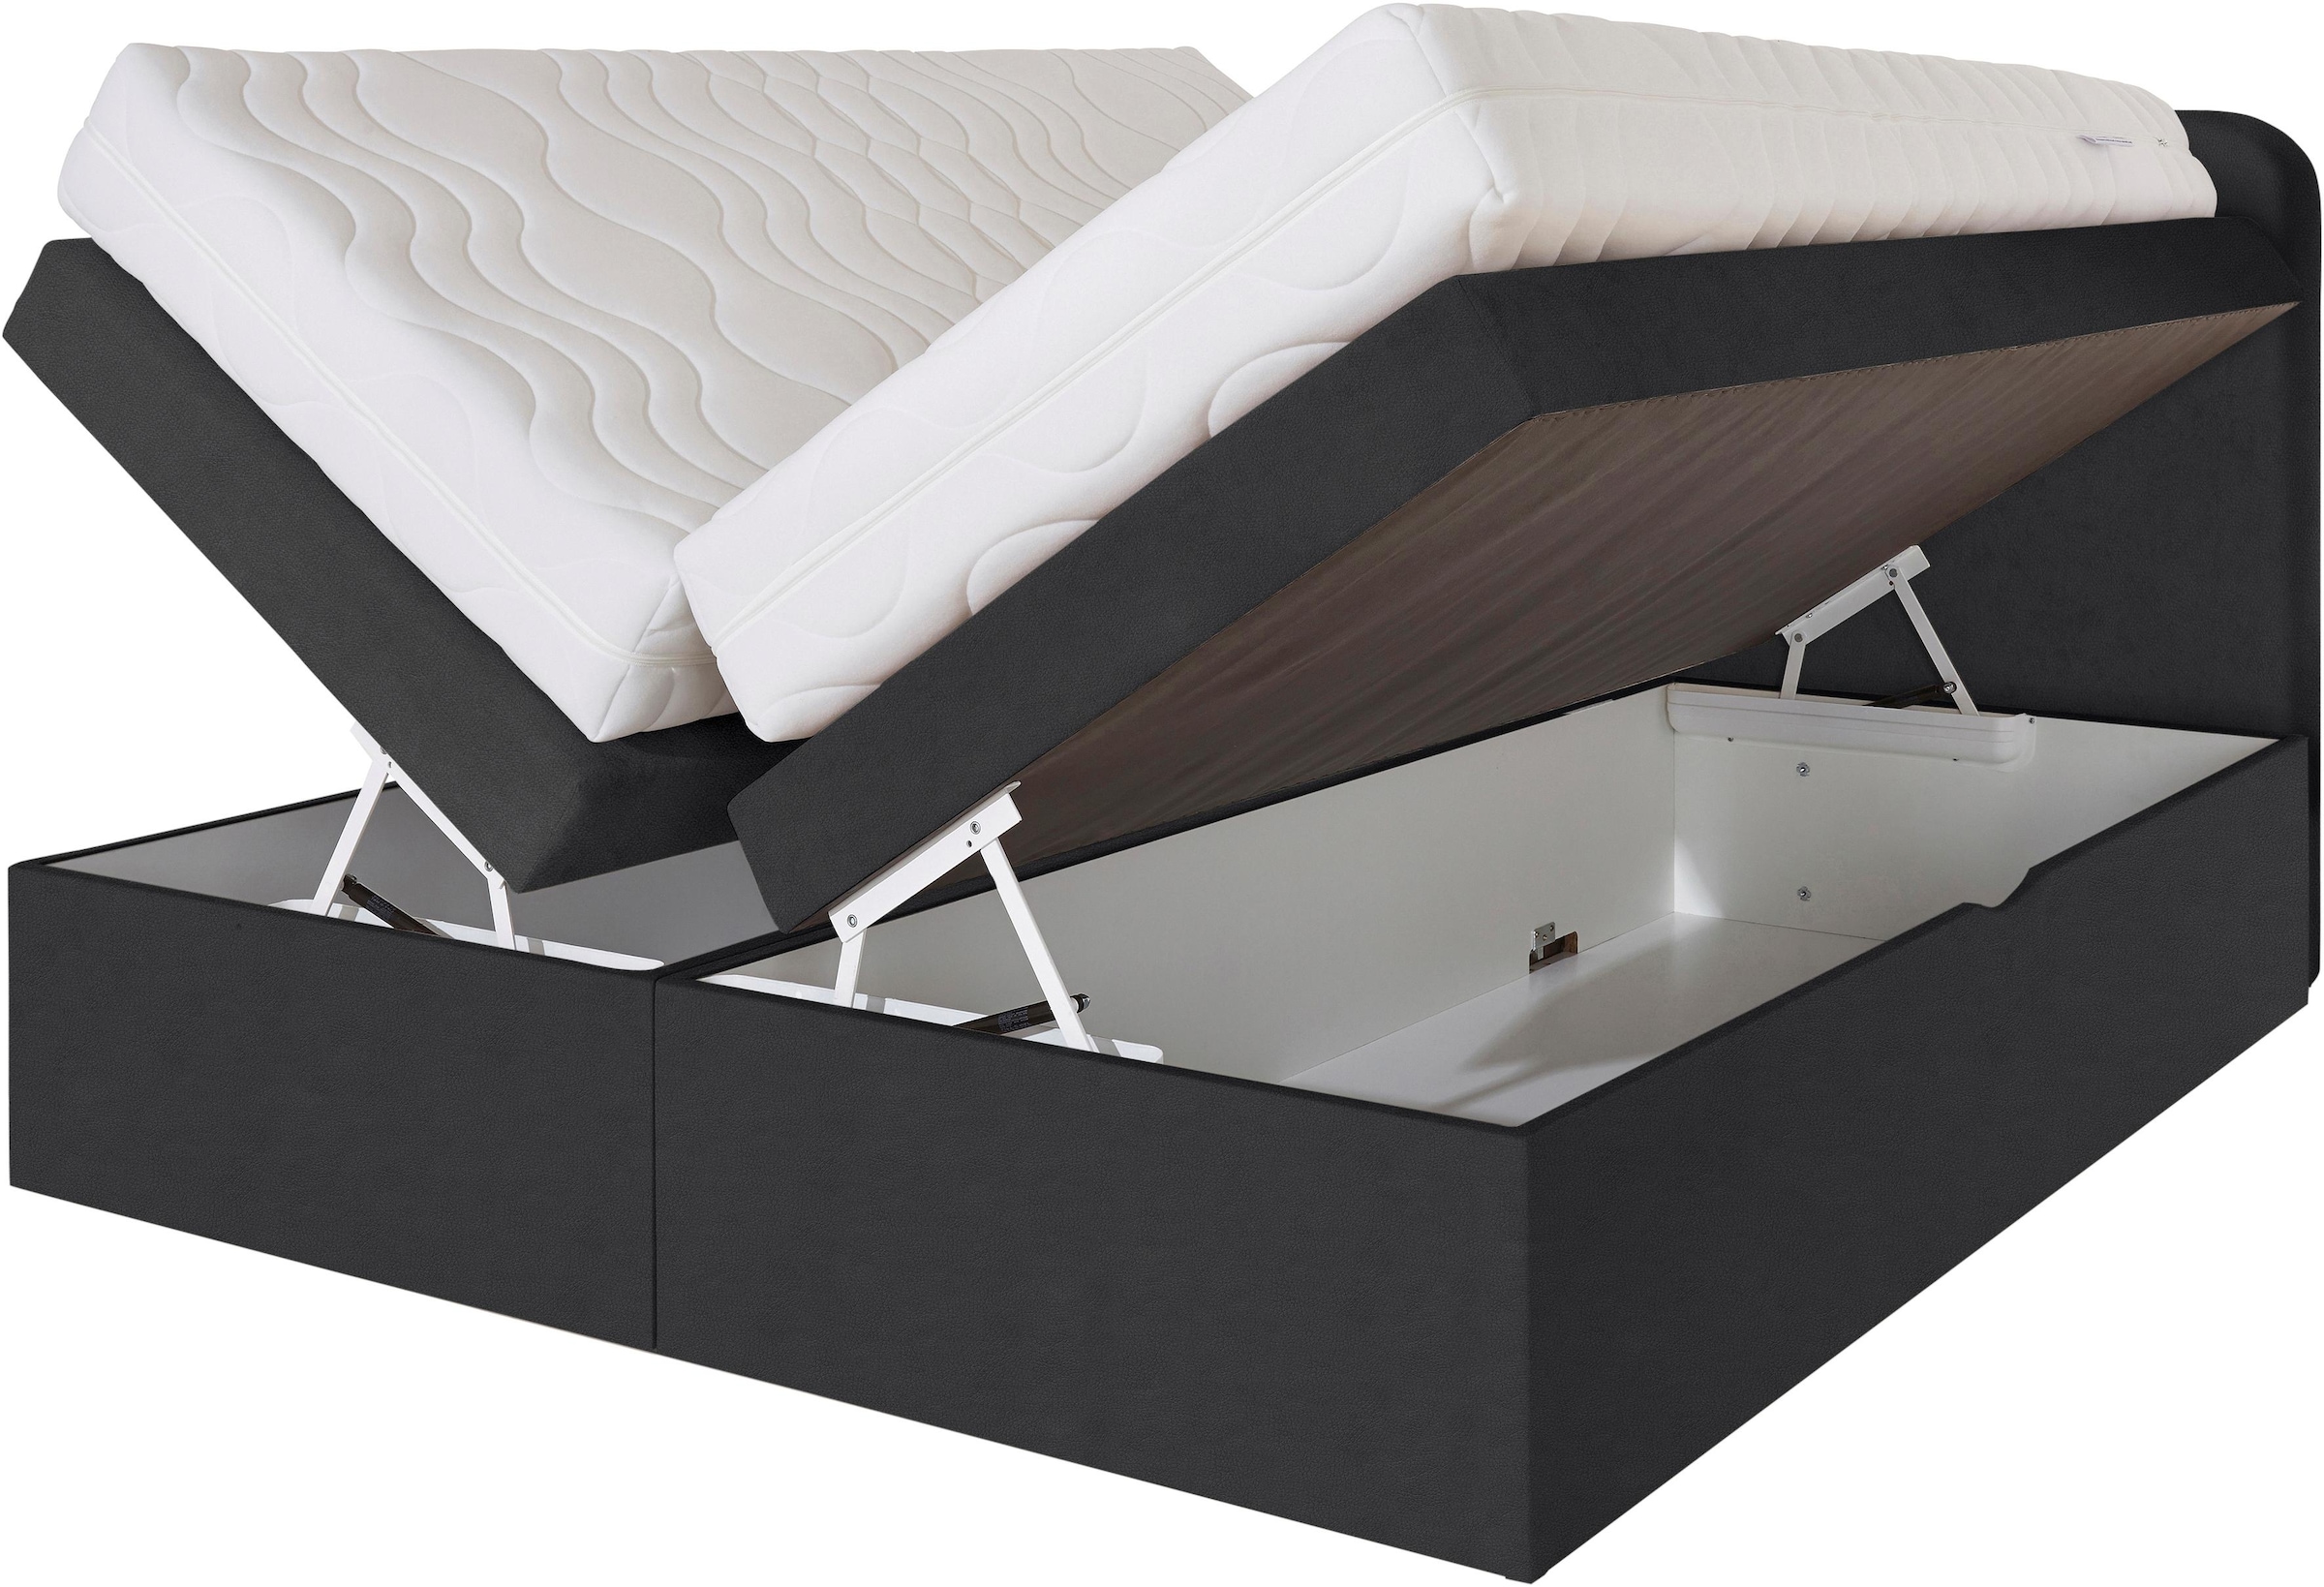 Westfalia Schlafkomfort Boxspringbett, wahlweise mit Bettkasten und 2 Matratzenqualitäten